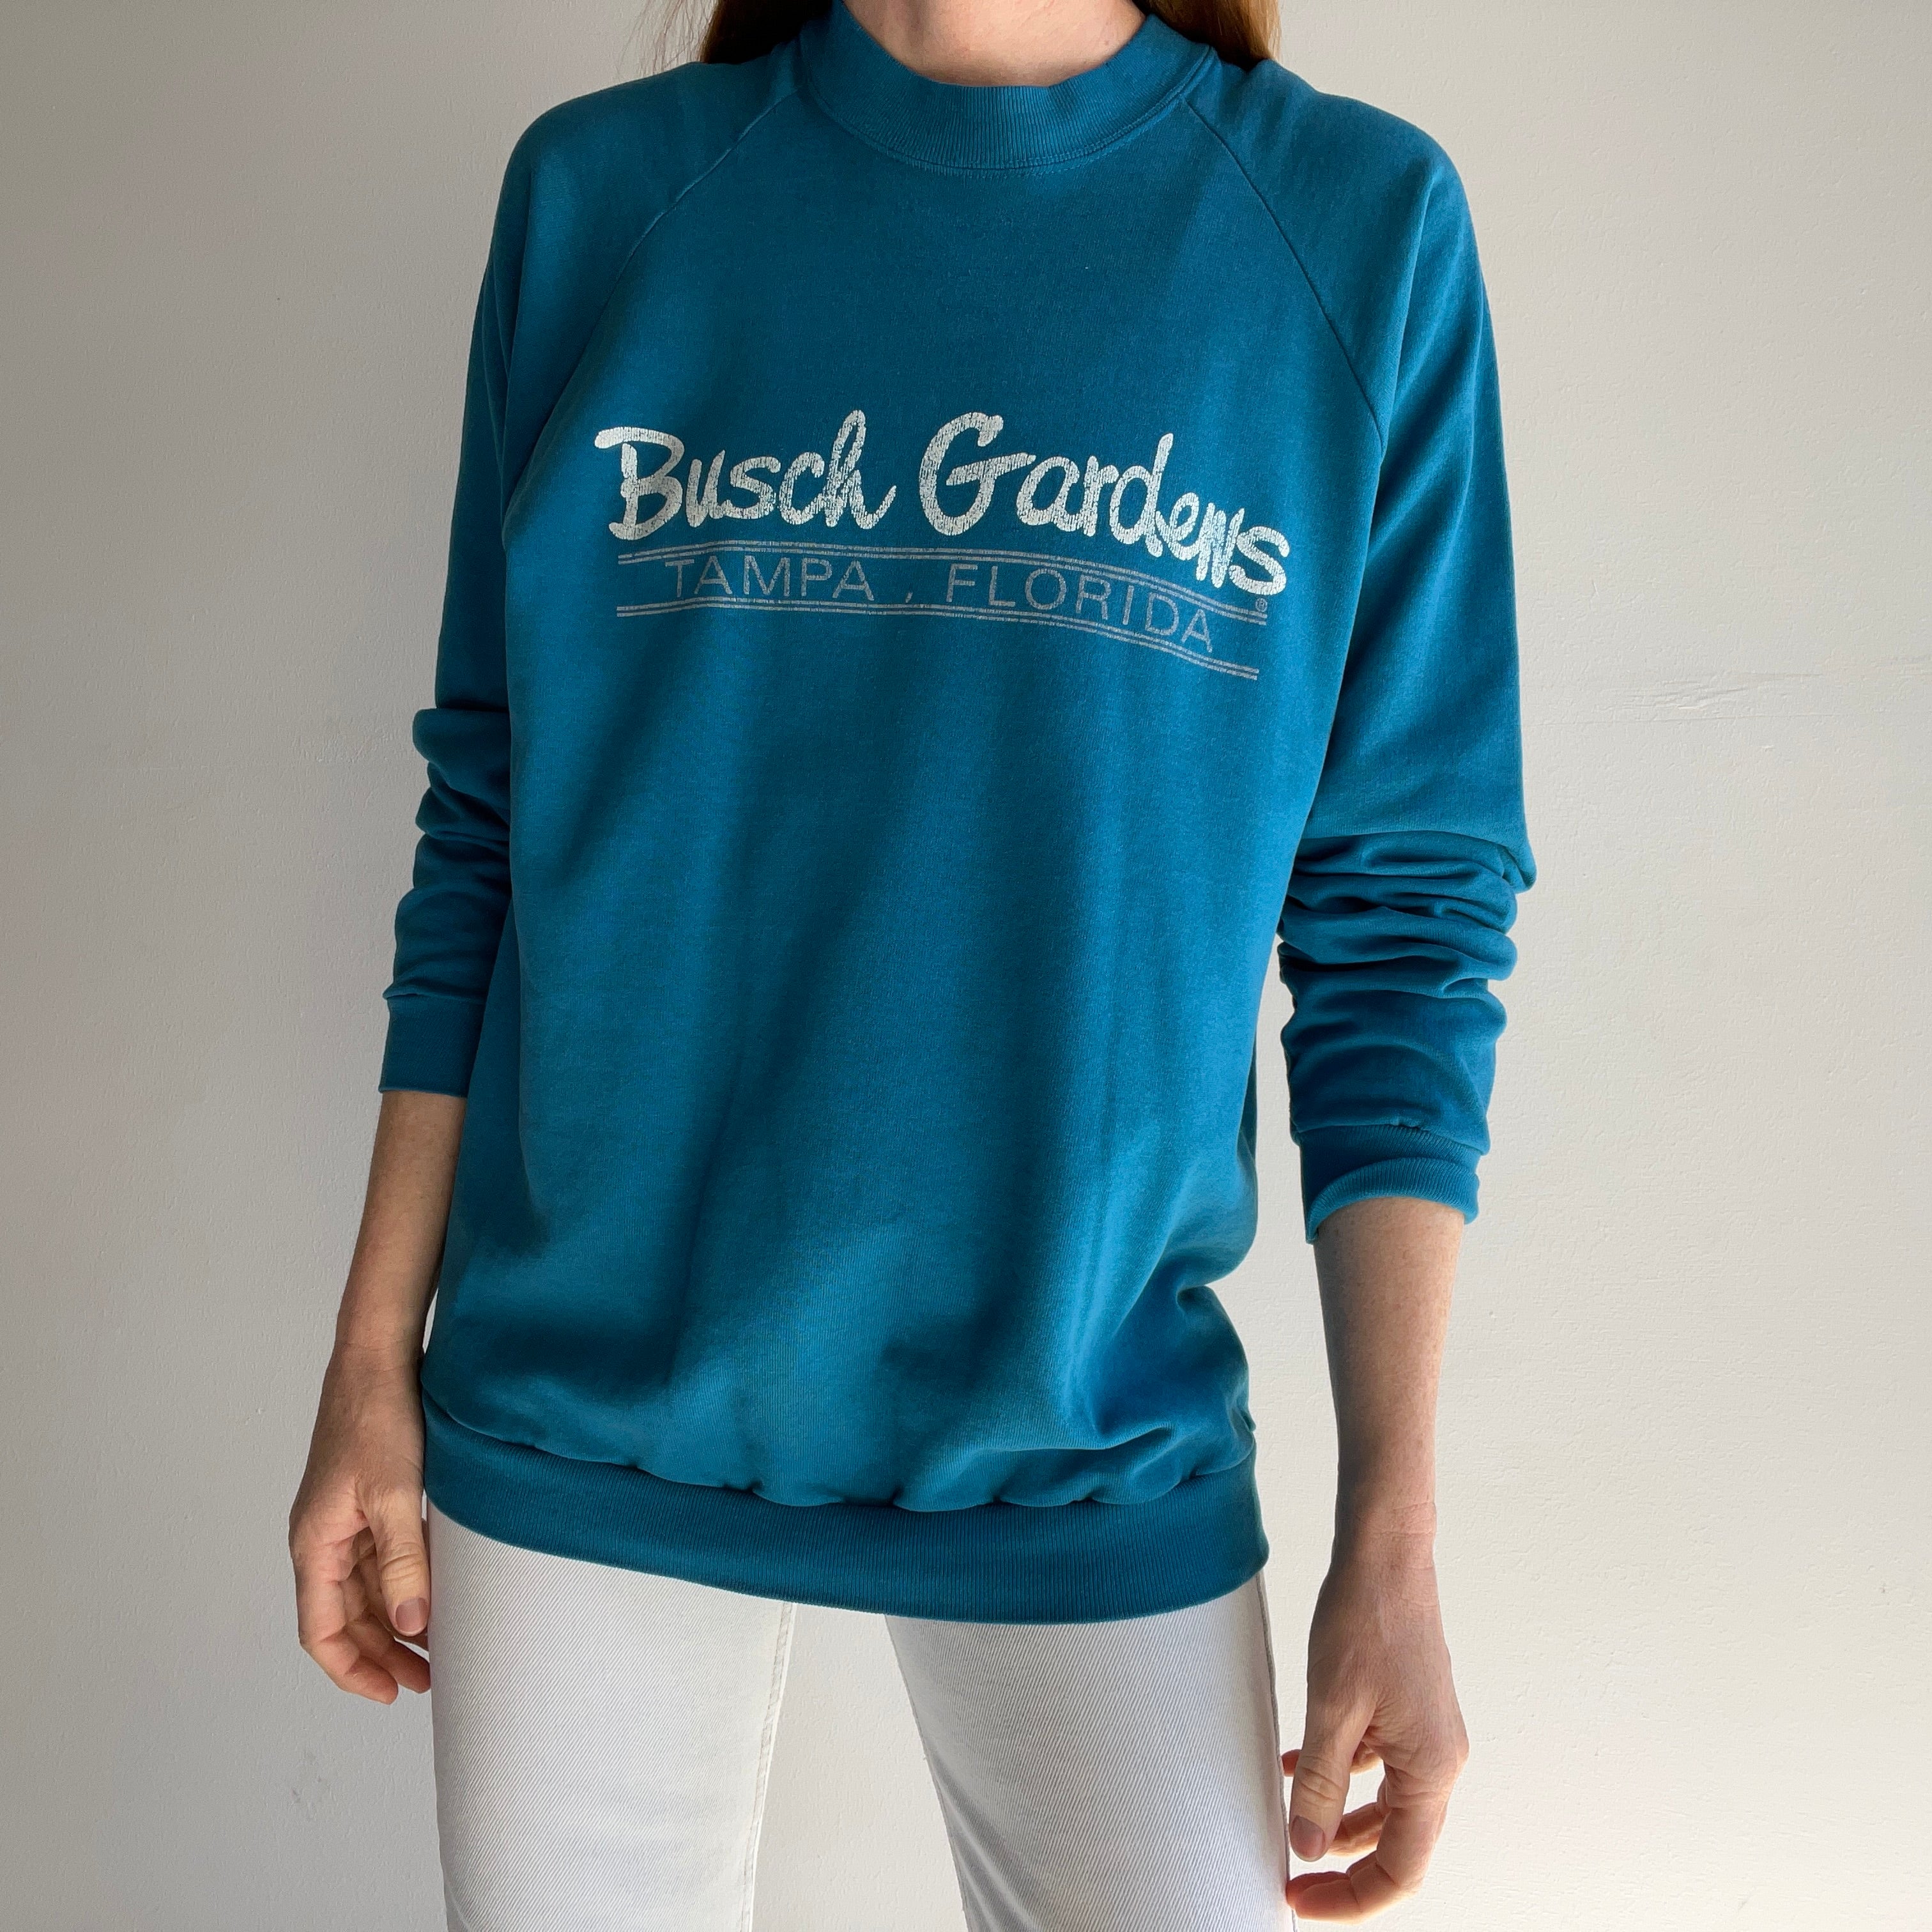 1980s Busch Gardens Super Thin and Slouchy Sweatshirt